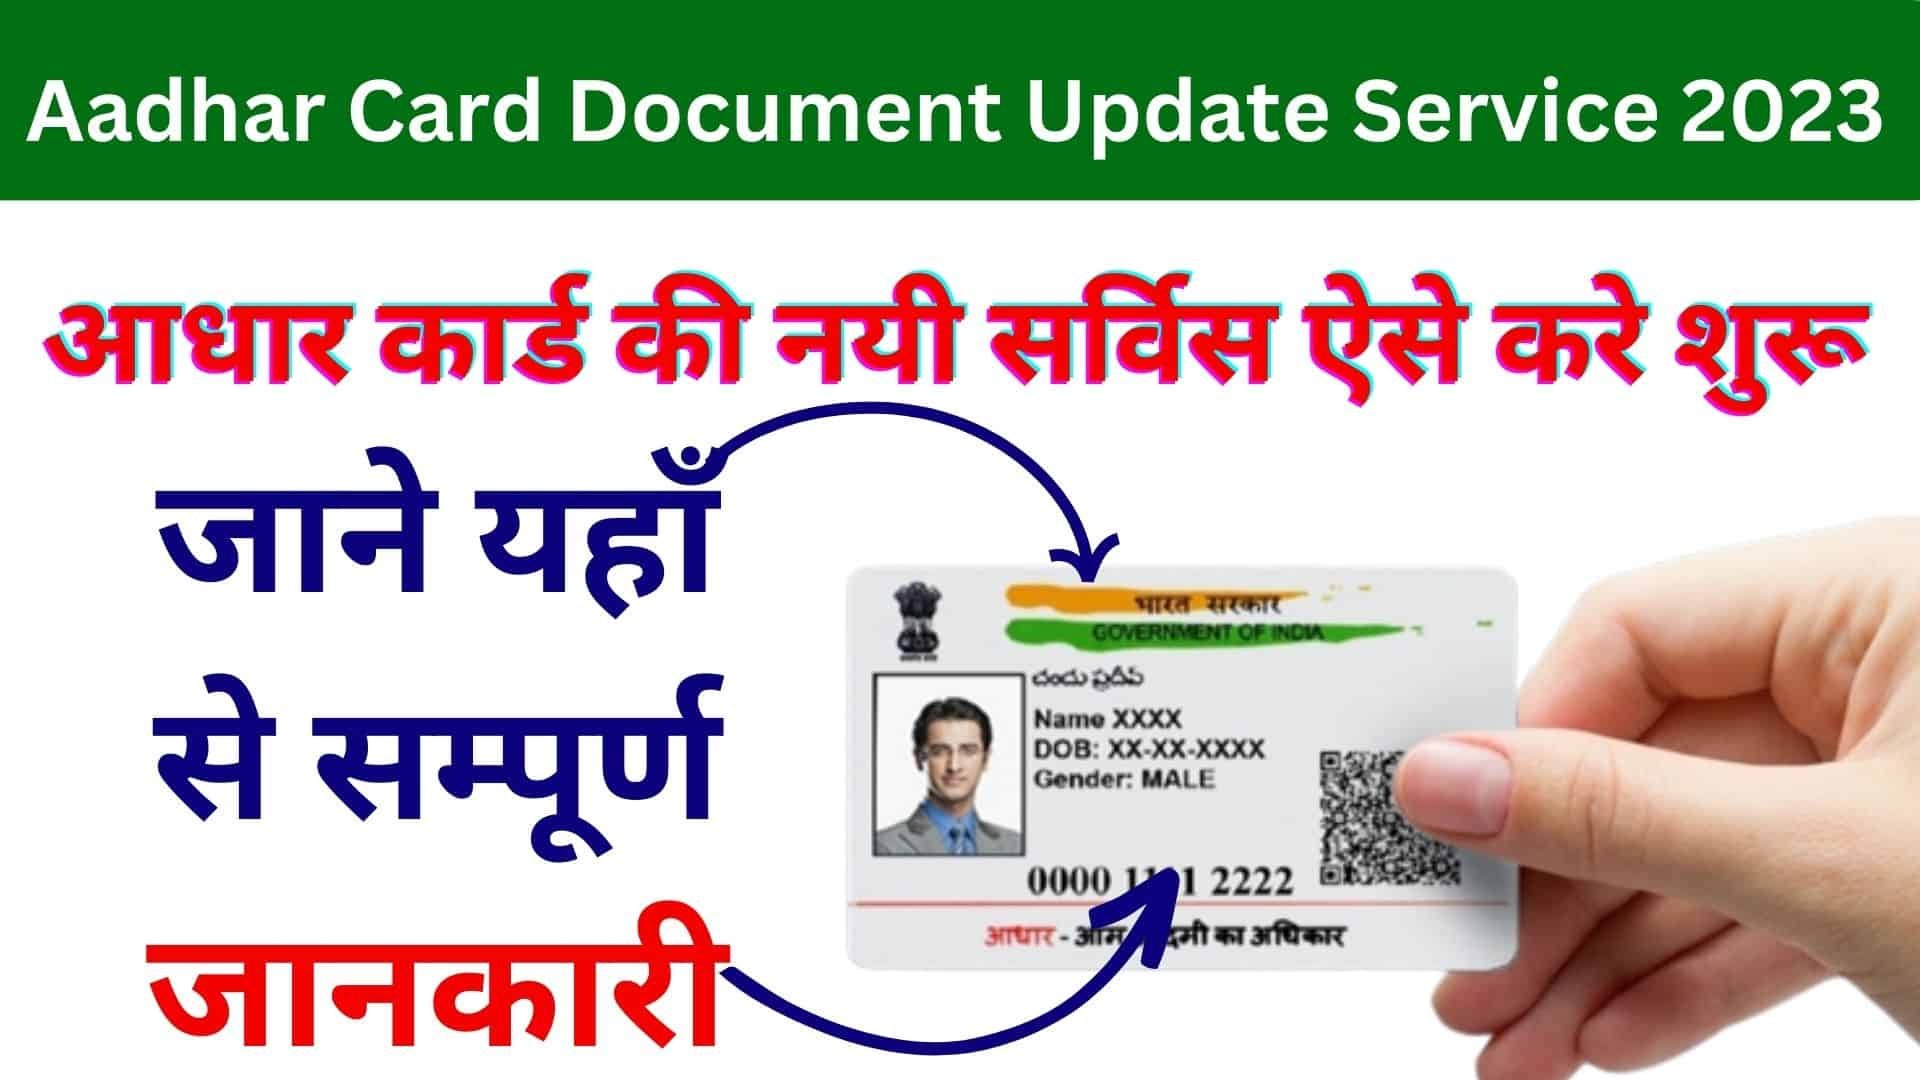 Aadhar Card Document Update Service 2023 : आधार कार्ड की नयी सर्विस ऐसे करे शुरू जाने यहाँ से सम्पूर्ण जानकारी